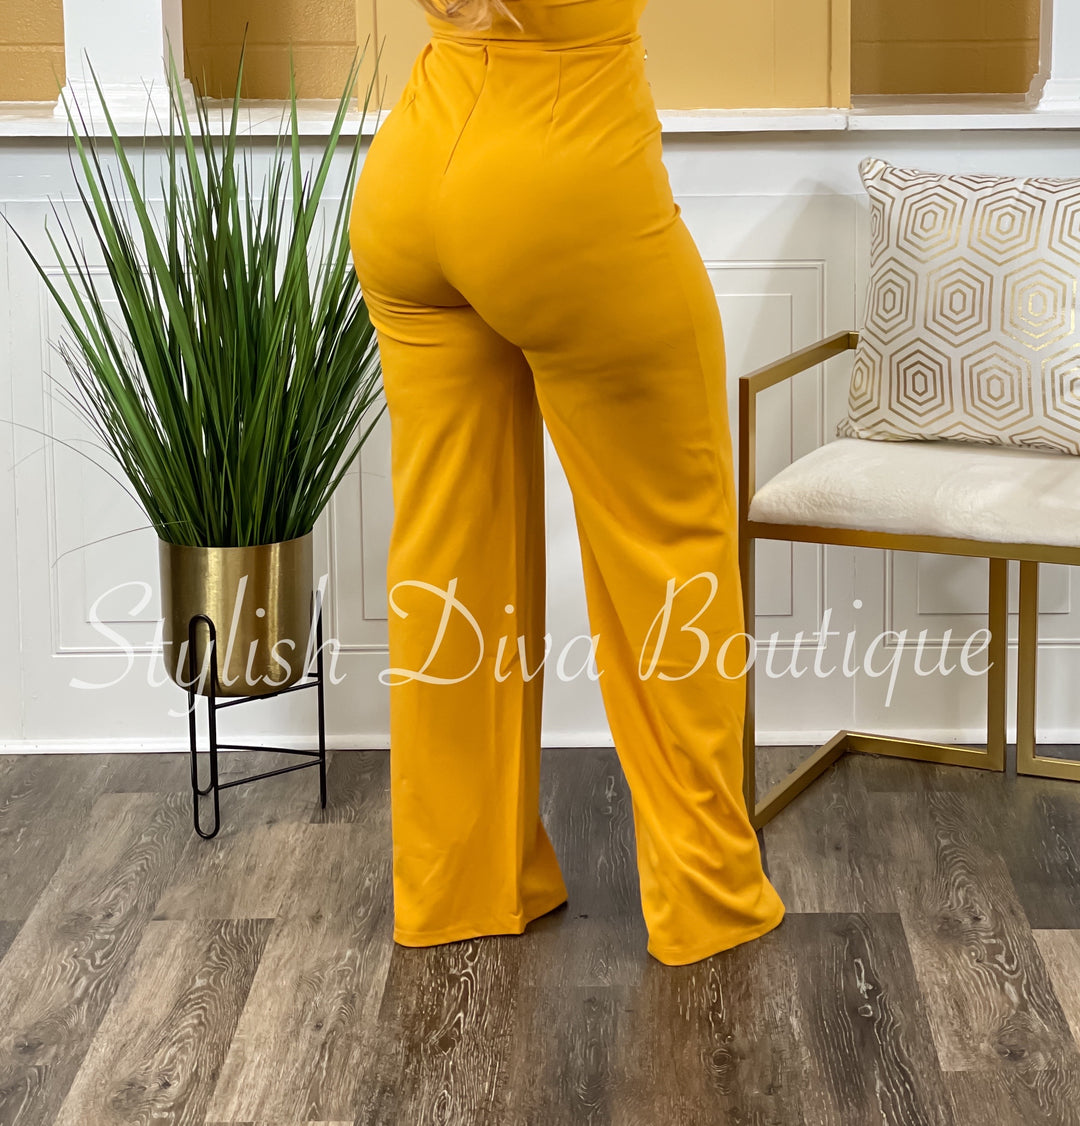 Olivia Gold Button High Waist Pants (Mustard)